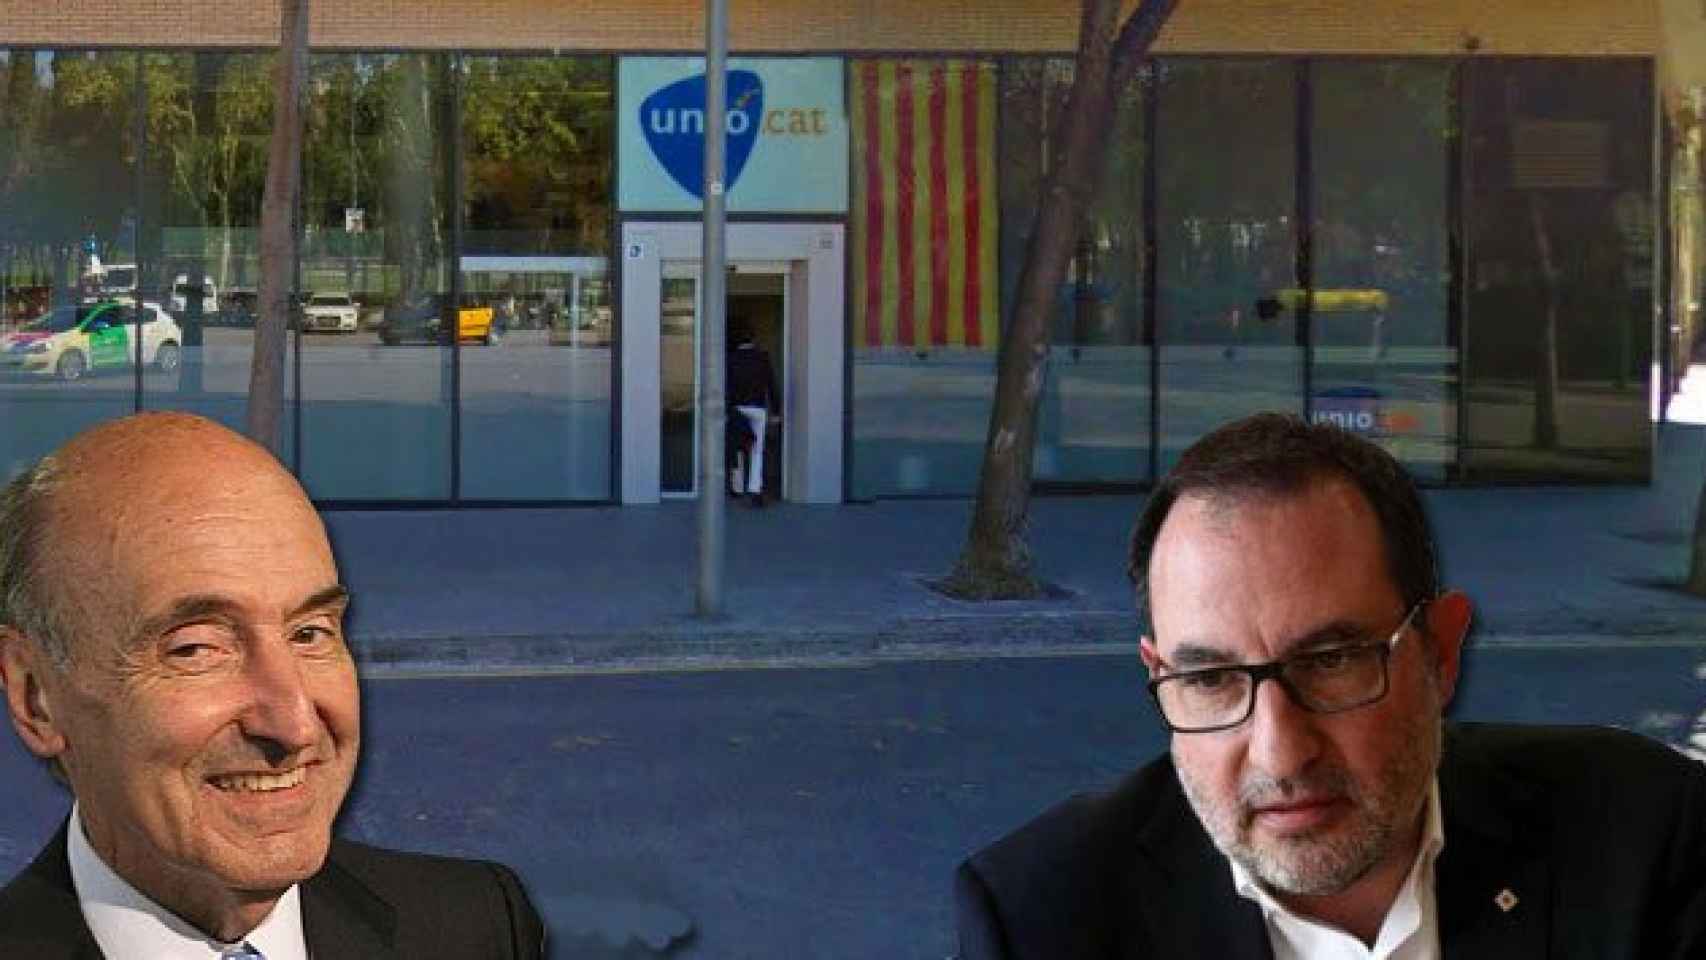 Ramon Espadaler (d), secretario general de Unió, y Miquel Roca (i), abogado que gestiona la insolvencia del partido junto a la sede de la formación.